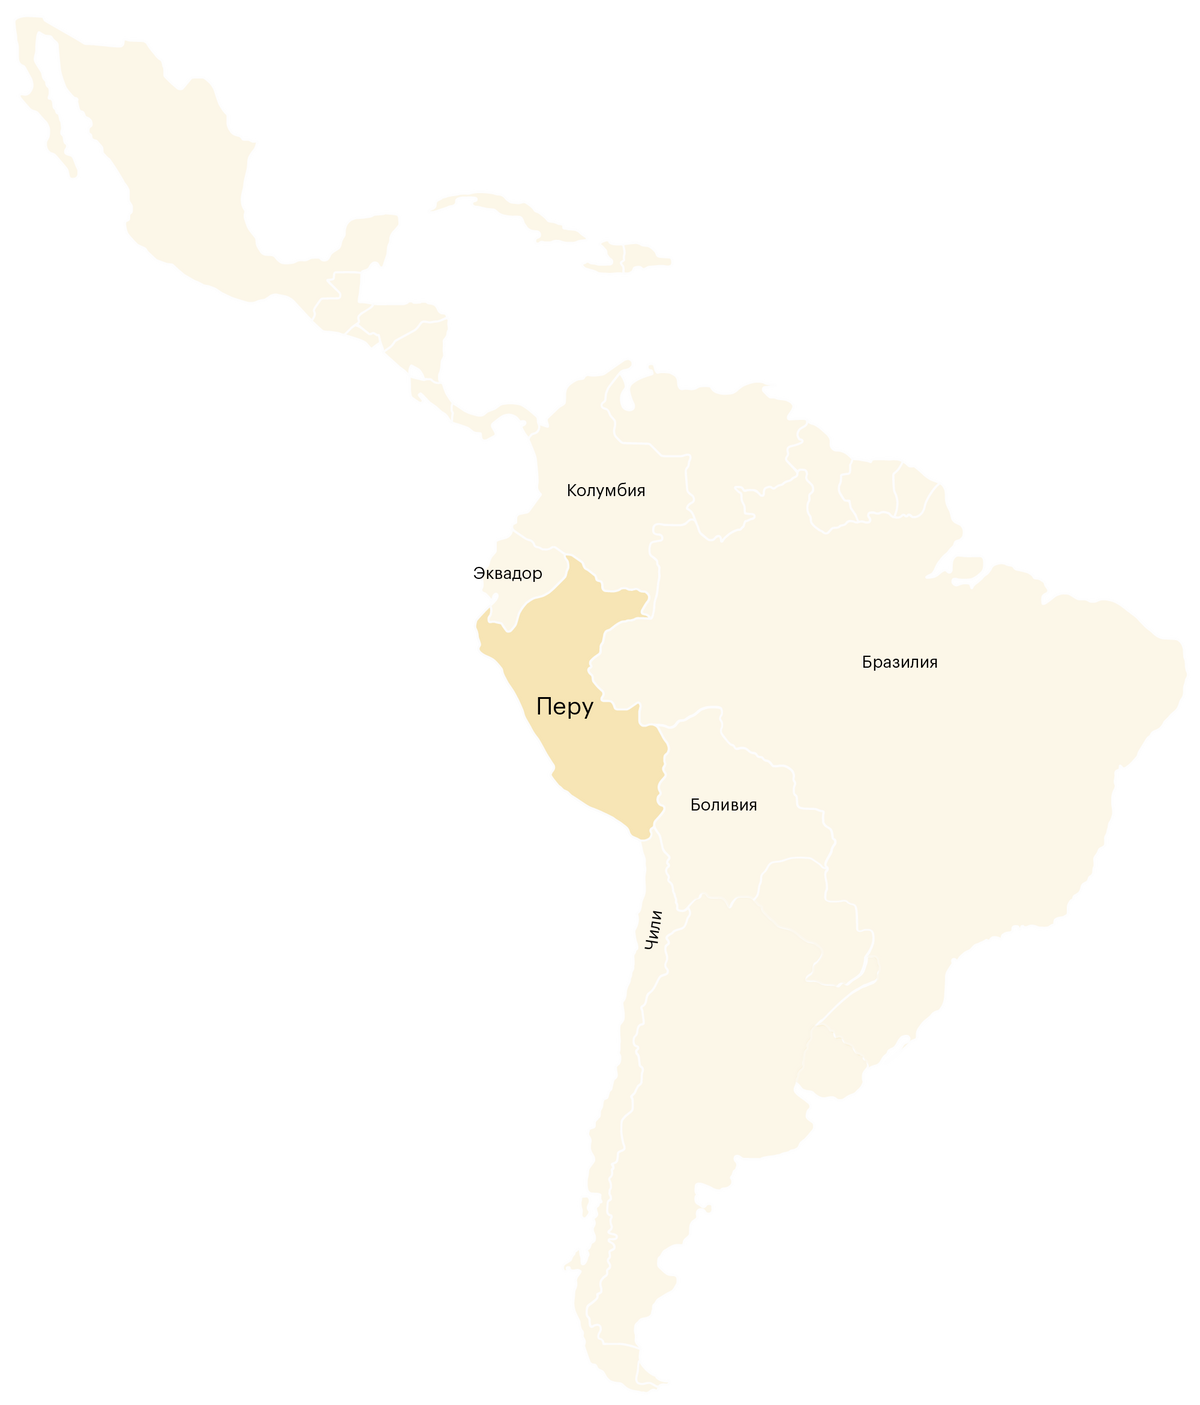 Перу — страна в Южной Америке. Она находится в западной части материка и граничит с Бразилией, Чили, Эквадором, Колумбией и Боливией